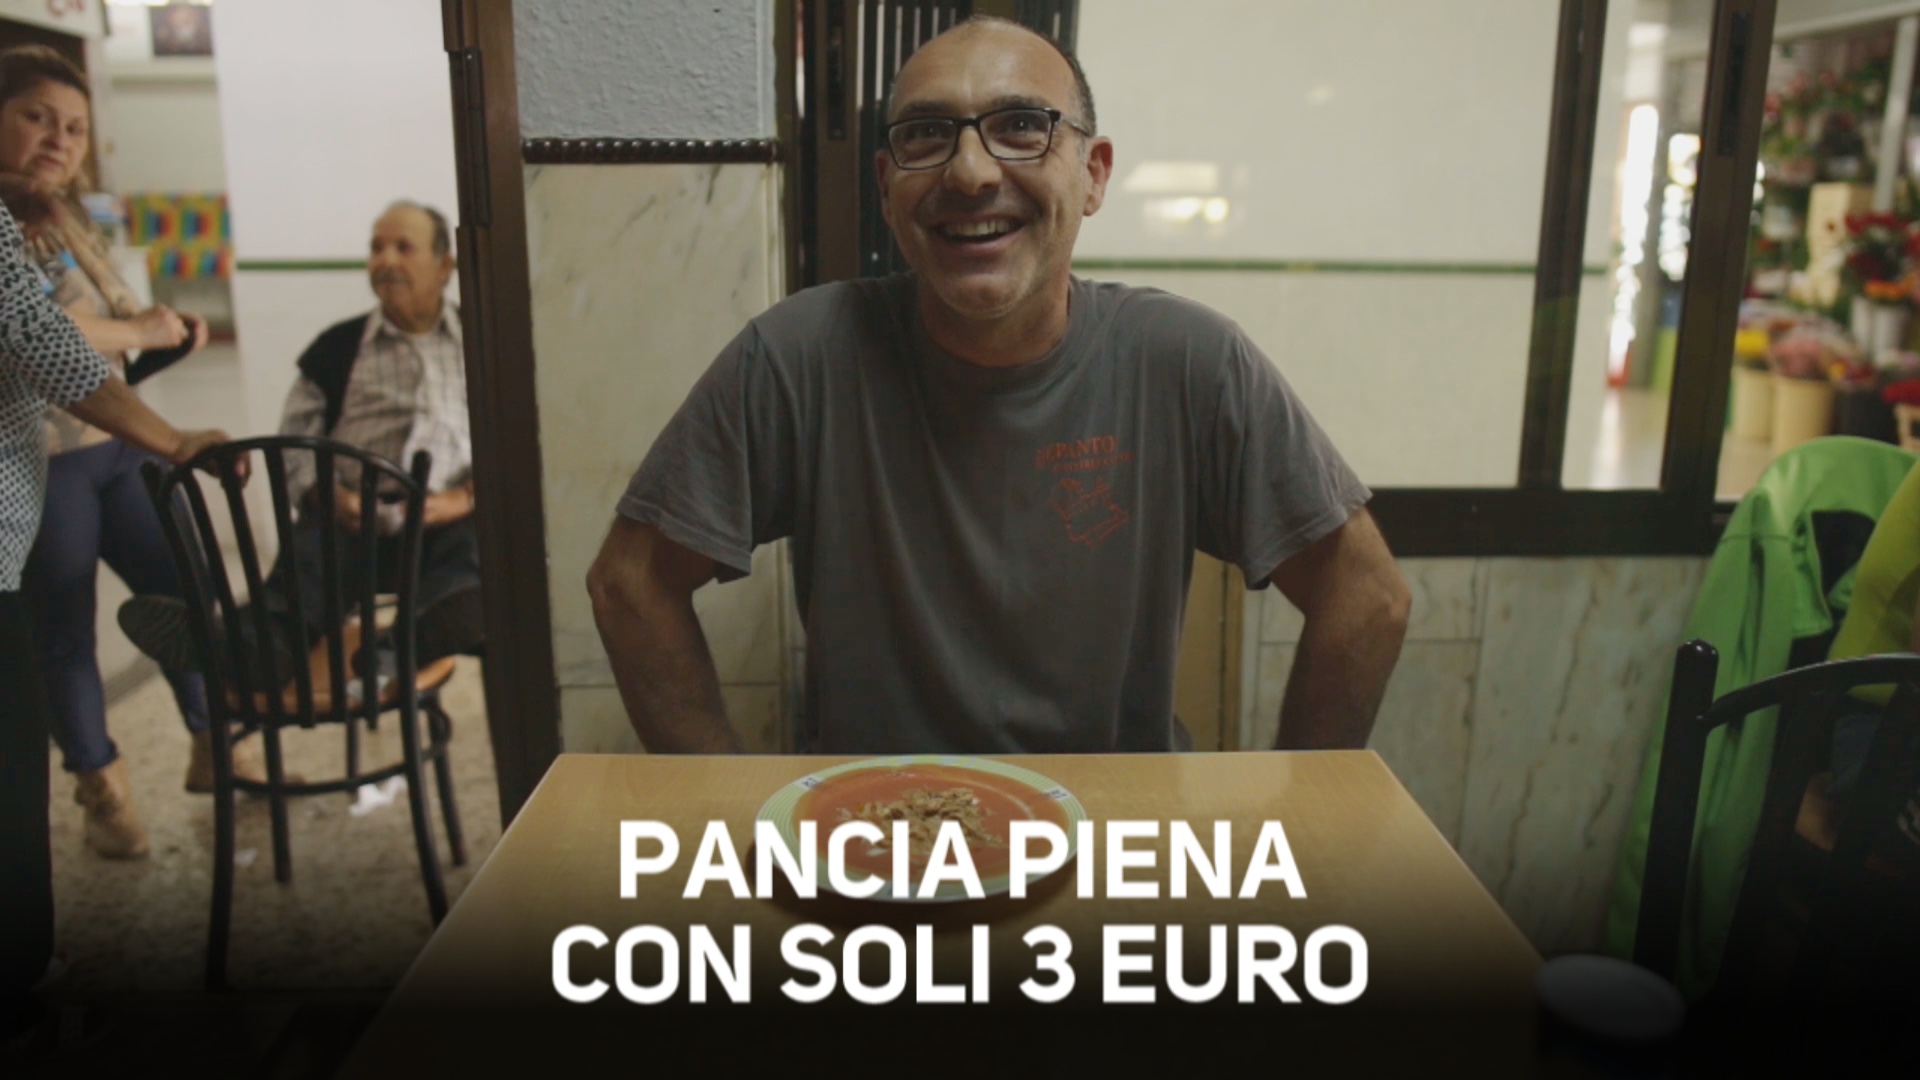 3 euro per un pasto: il ristorante pie' economico